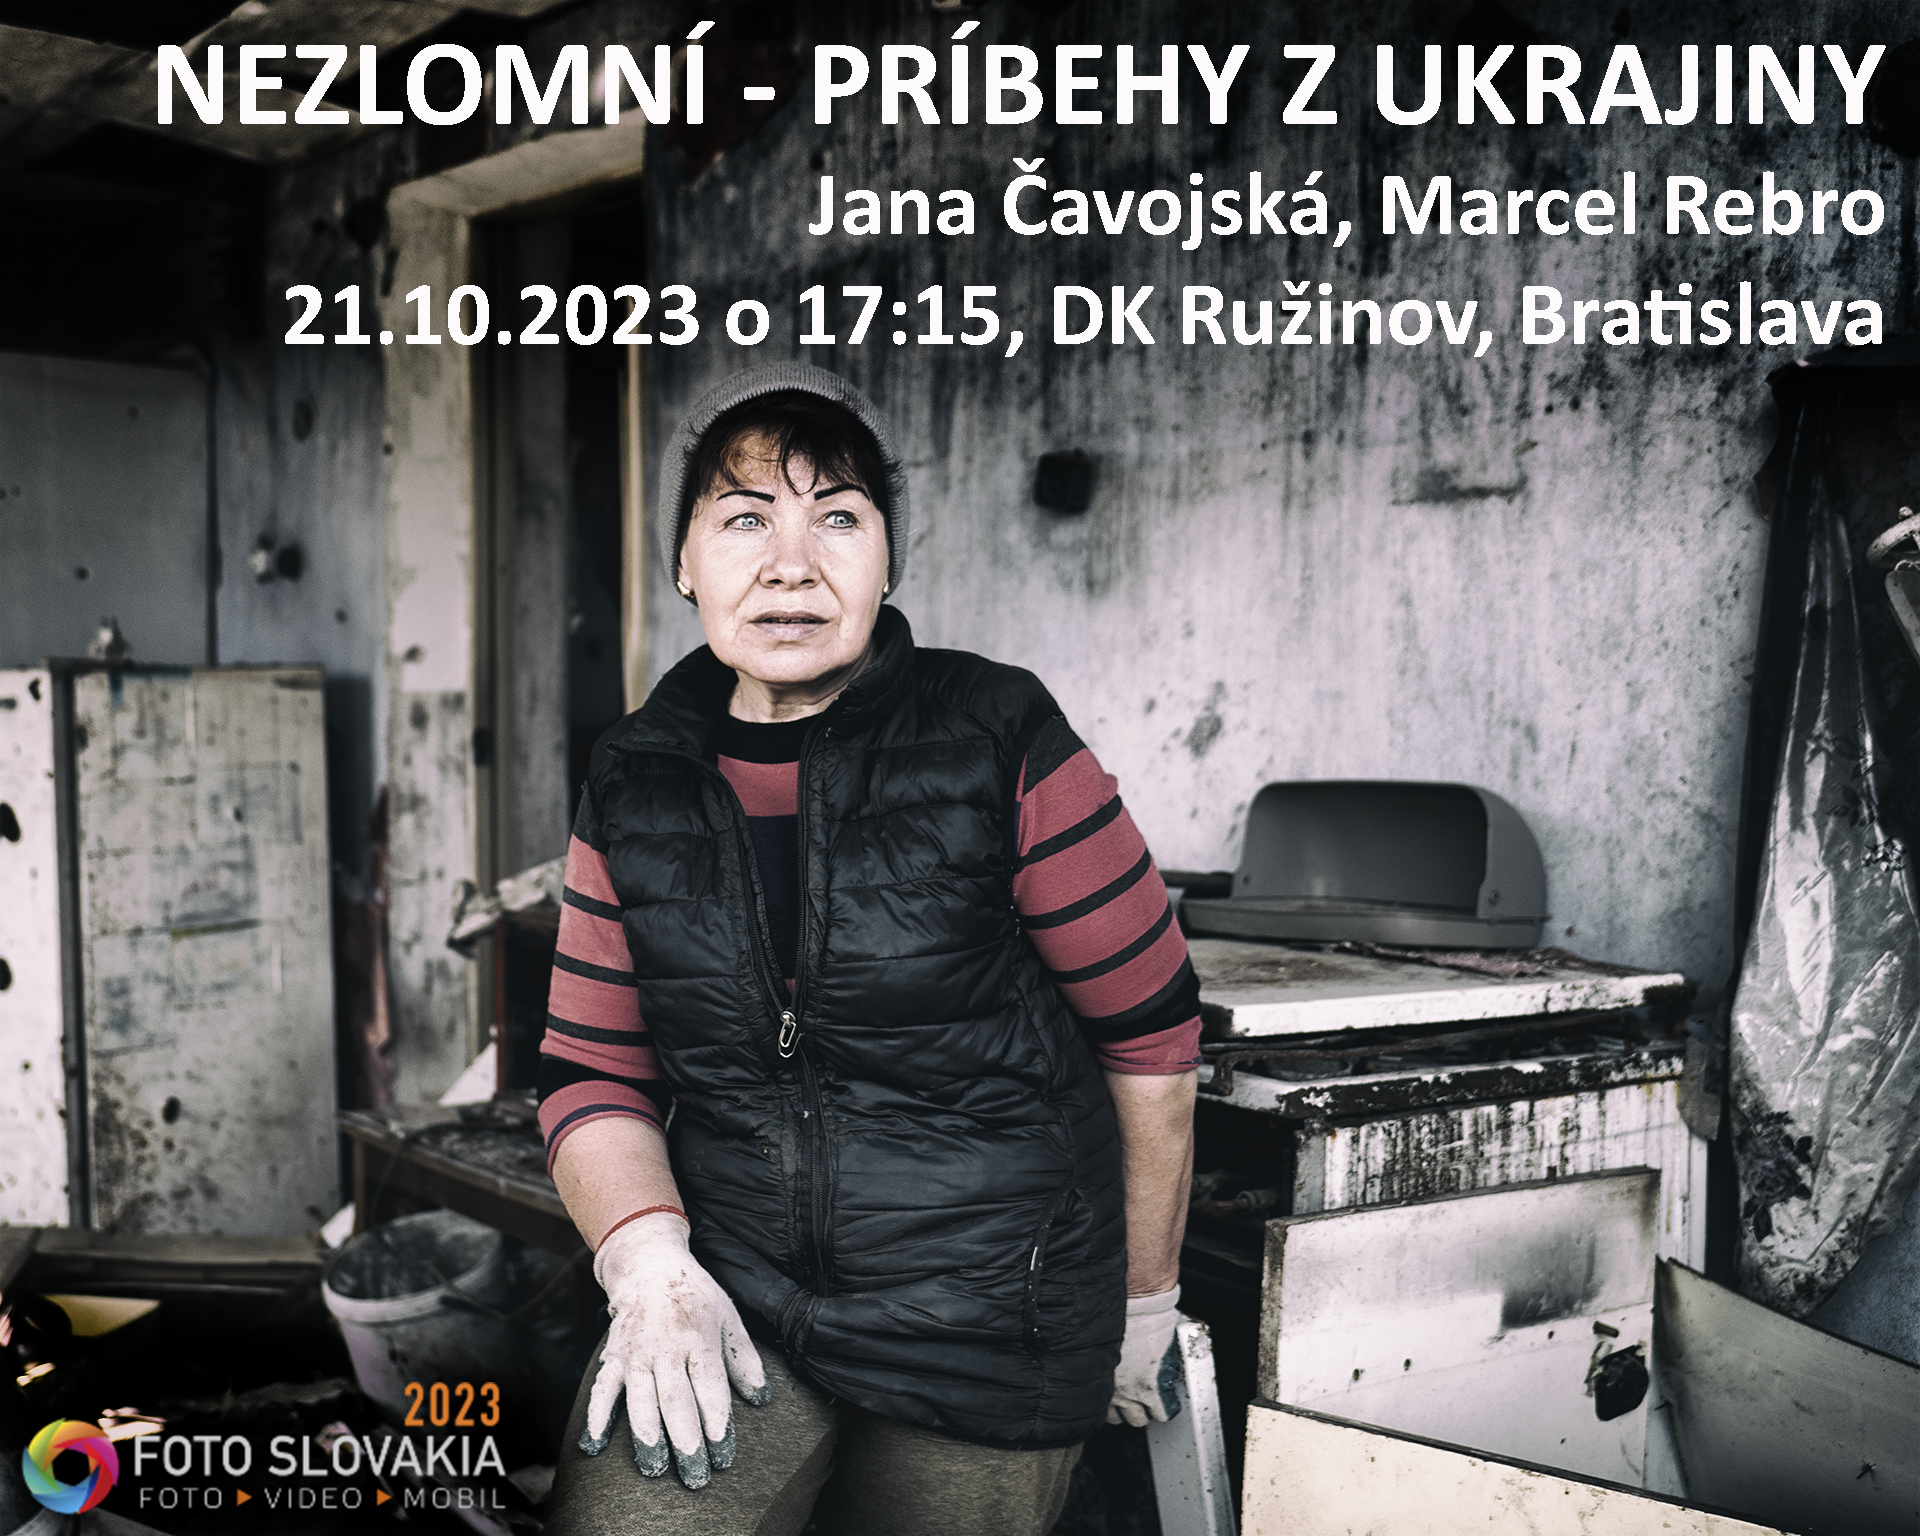 Nezlomní – príbehy z Ukrajiny na Foto Slovakia 2023